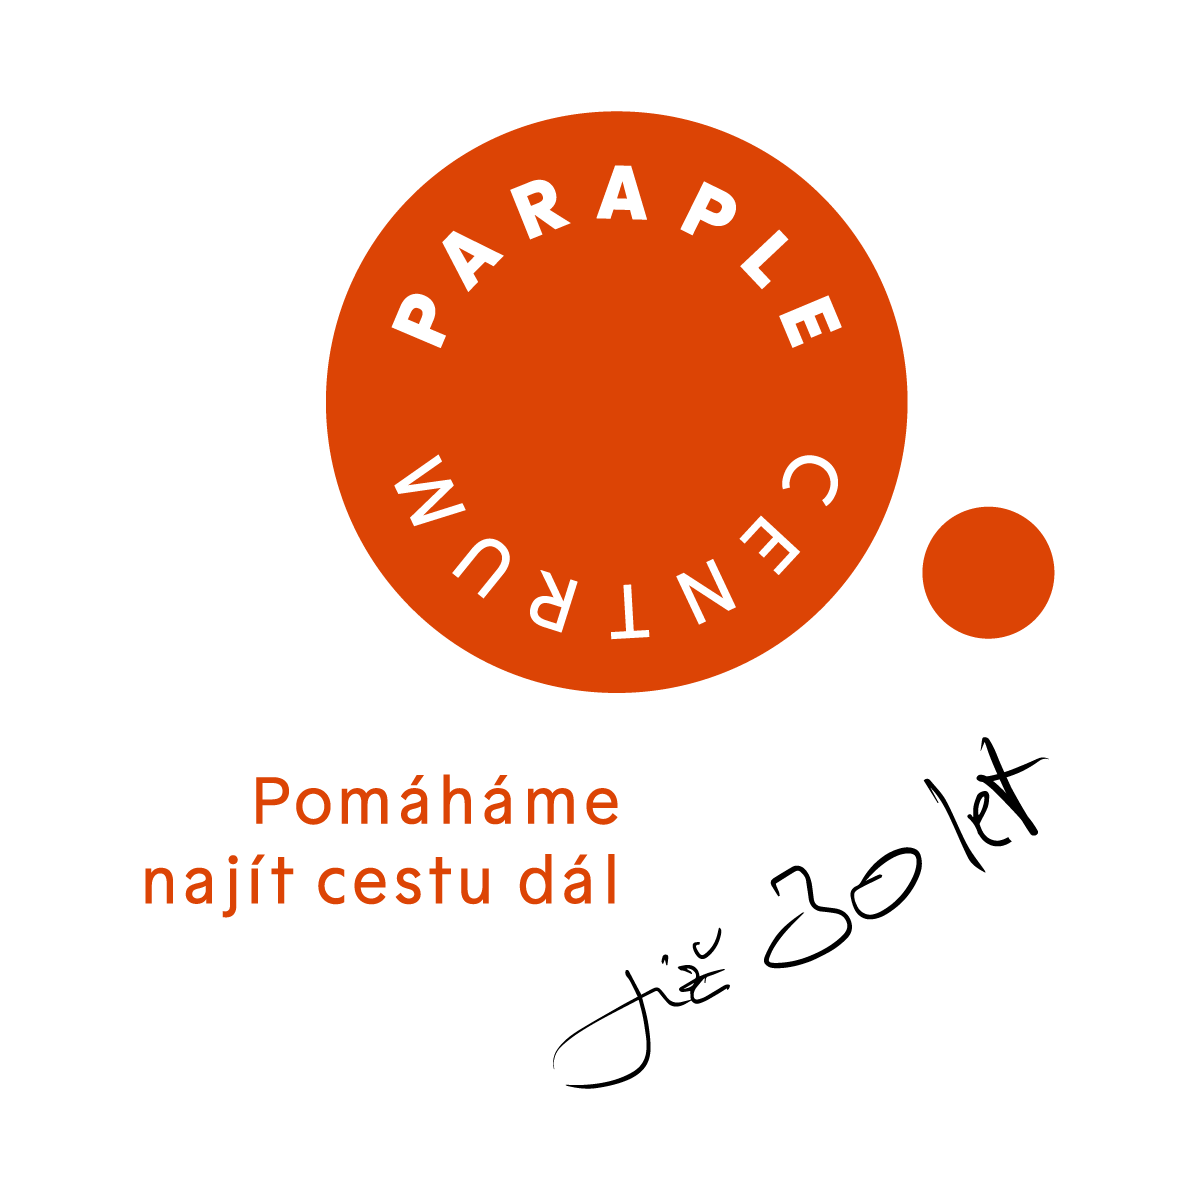 Centrum Paraple, logo